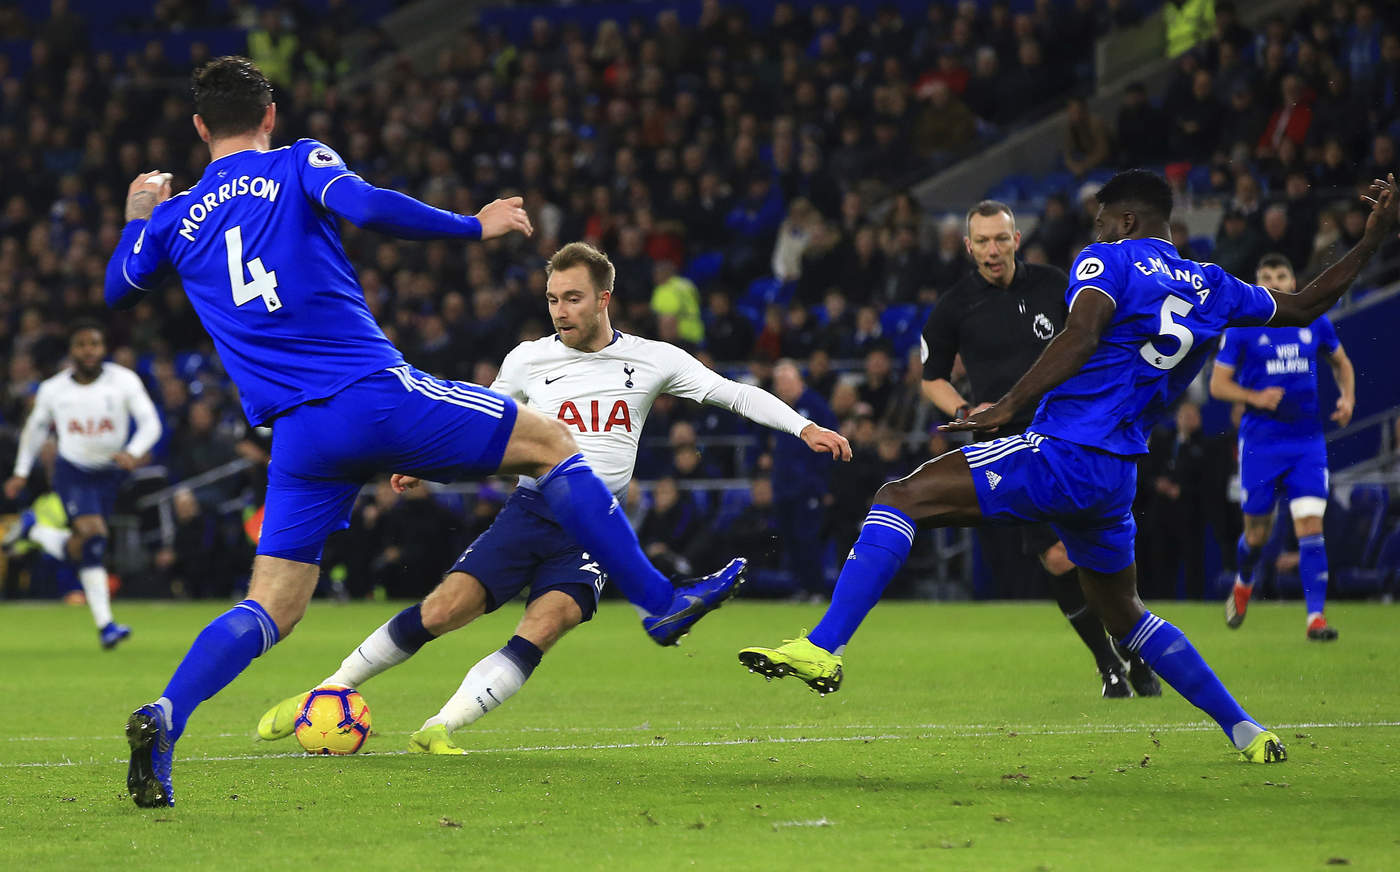 Christian Eriksen golpea el balón para marcar el segundo tanto en la victoria del Tottenham 3-0 sobre Cardiff City. (EFE)